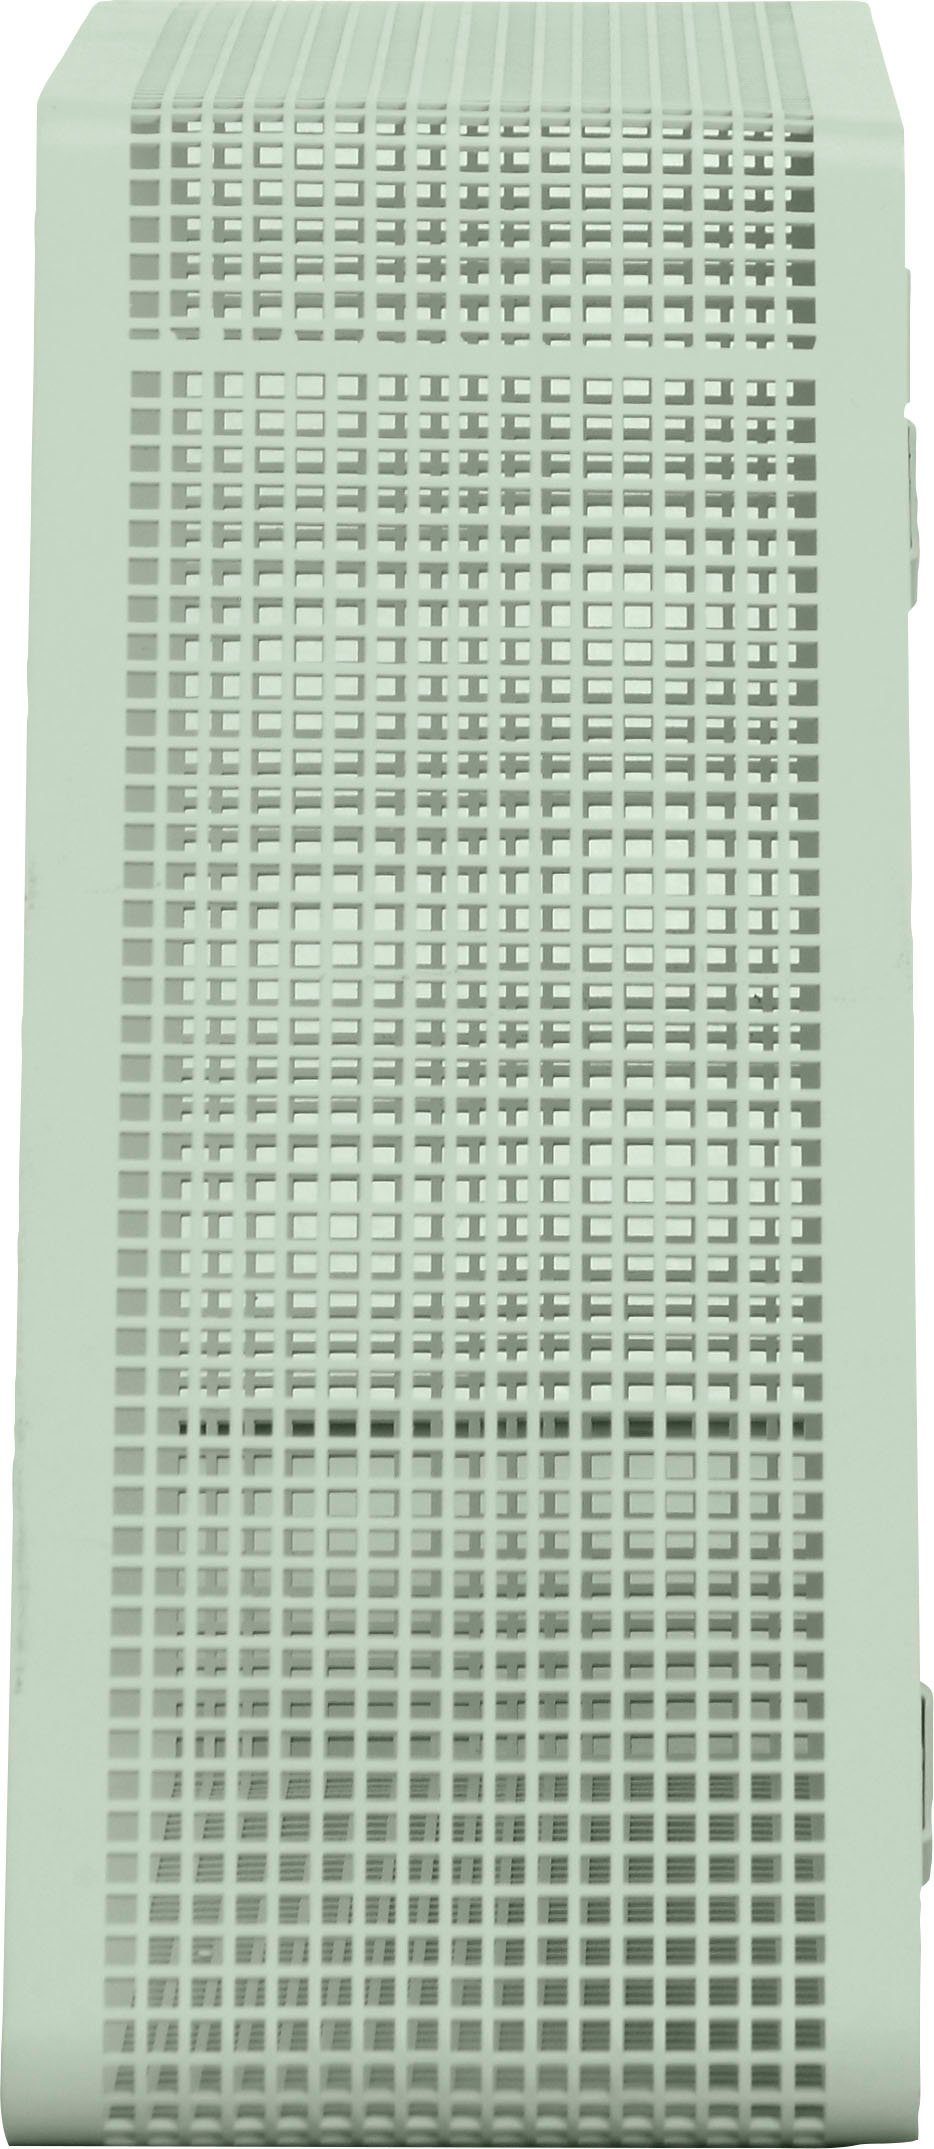 andas Regal Crossby, mit Netzmuster, Breite ca. 56,8 cm, Design by Morten Georgsen grün